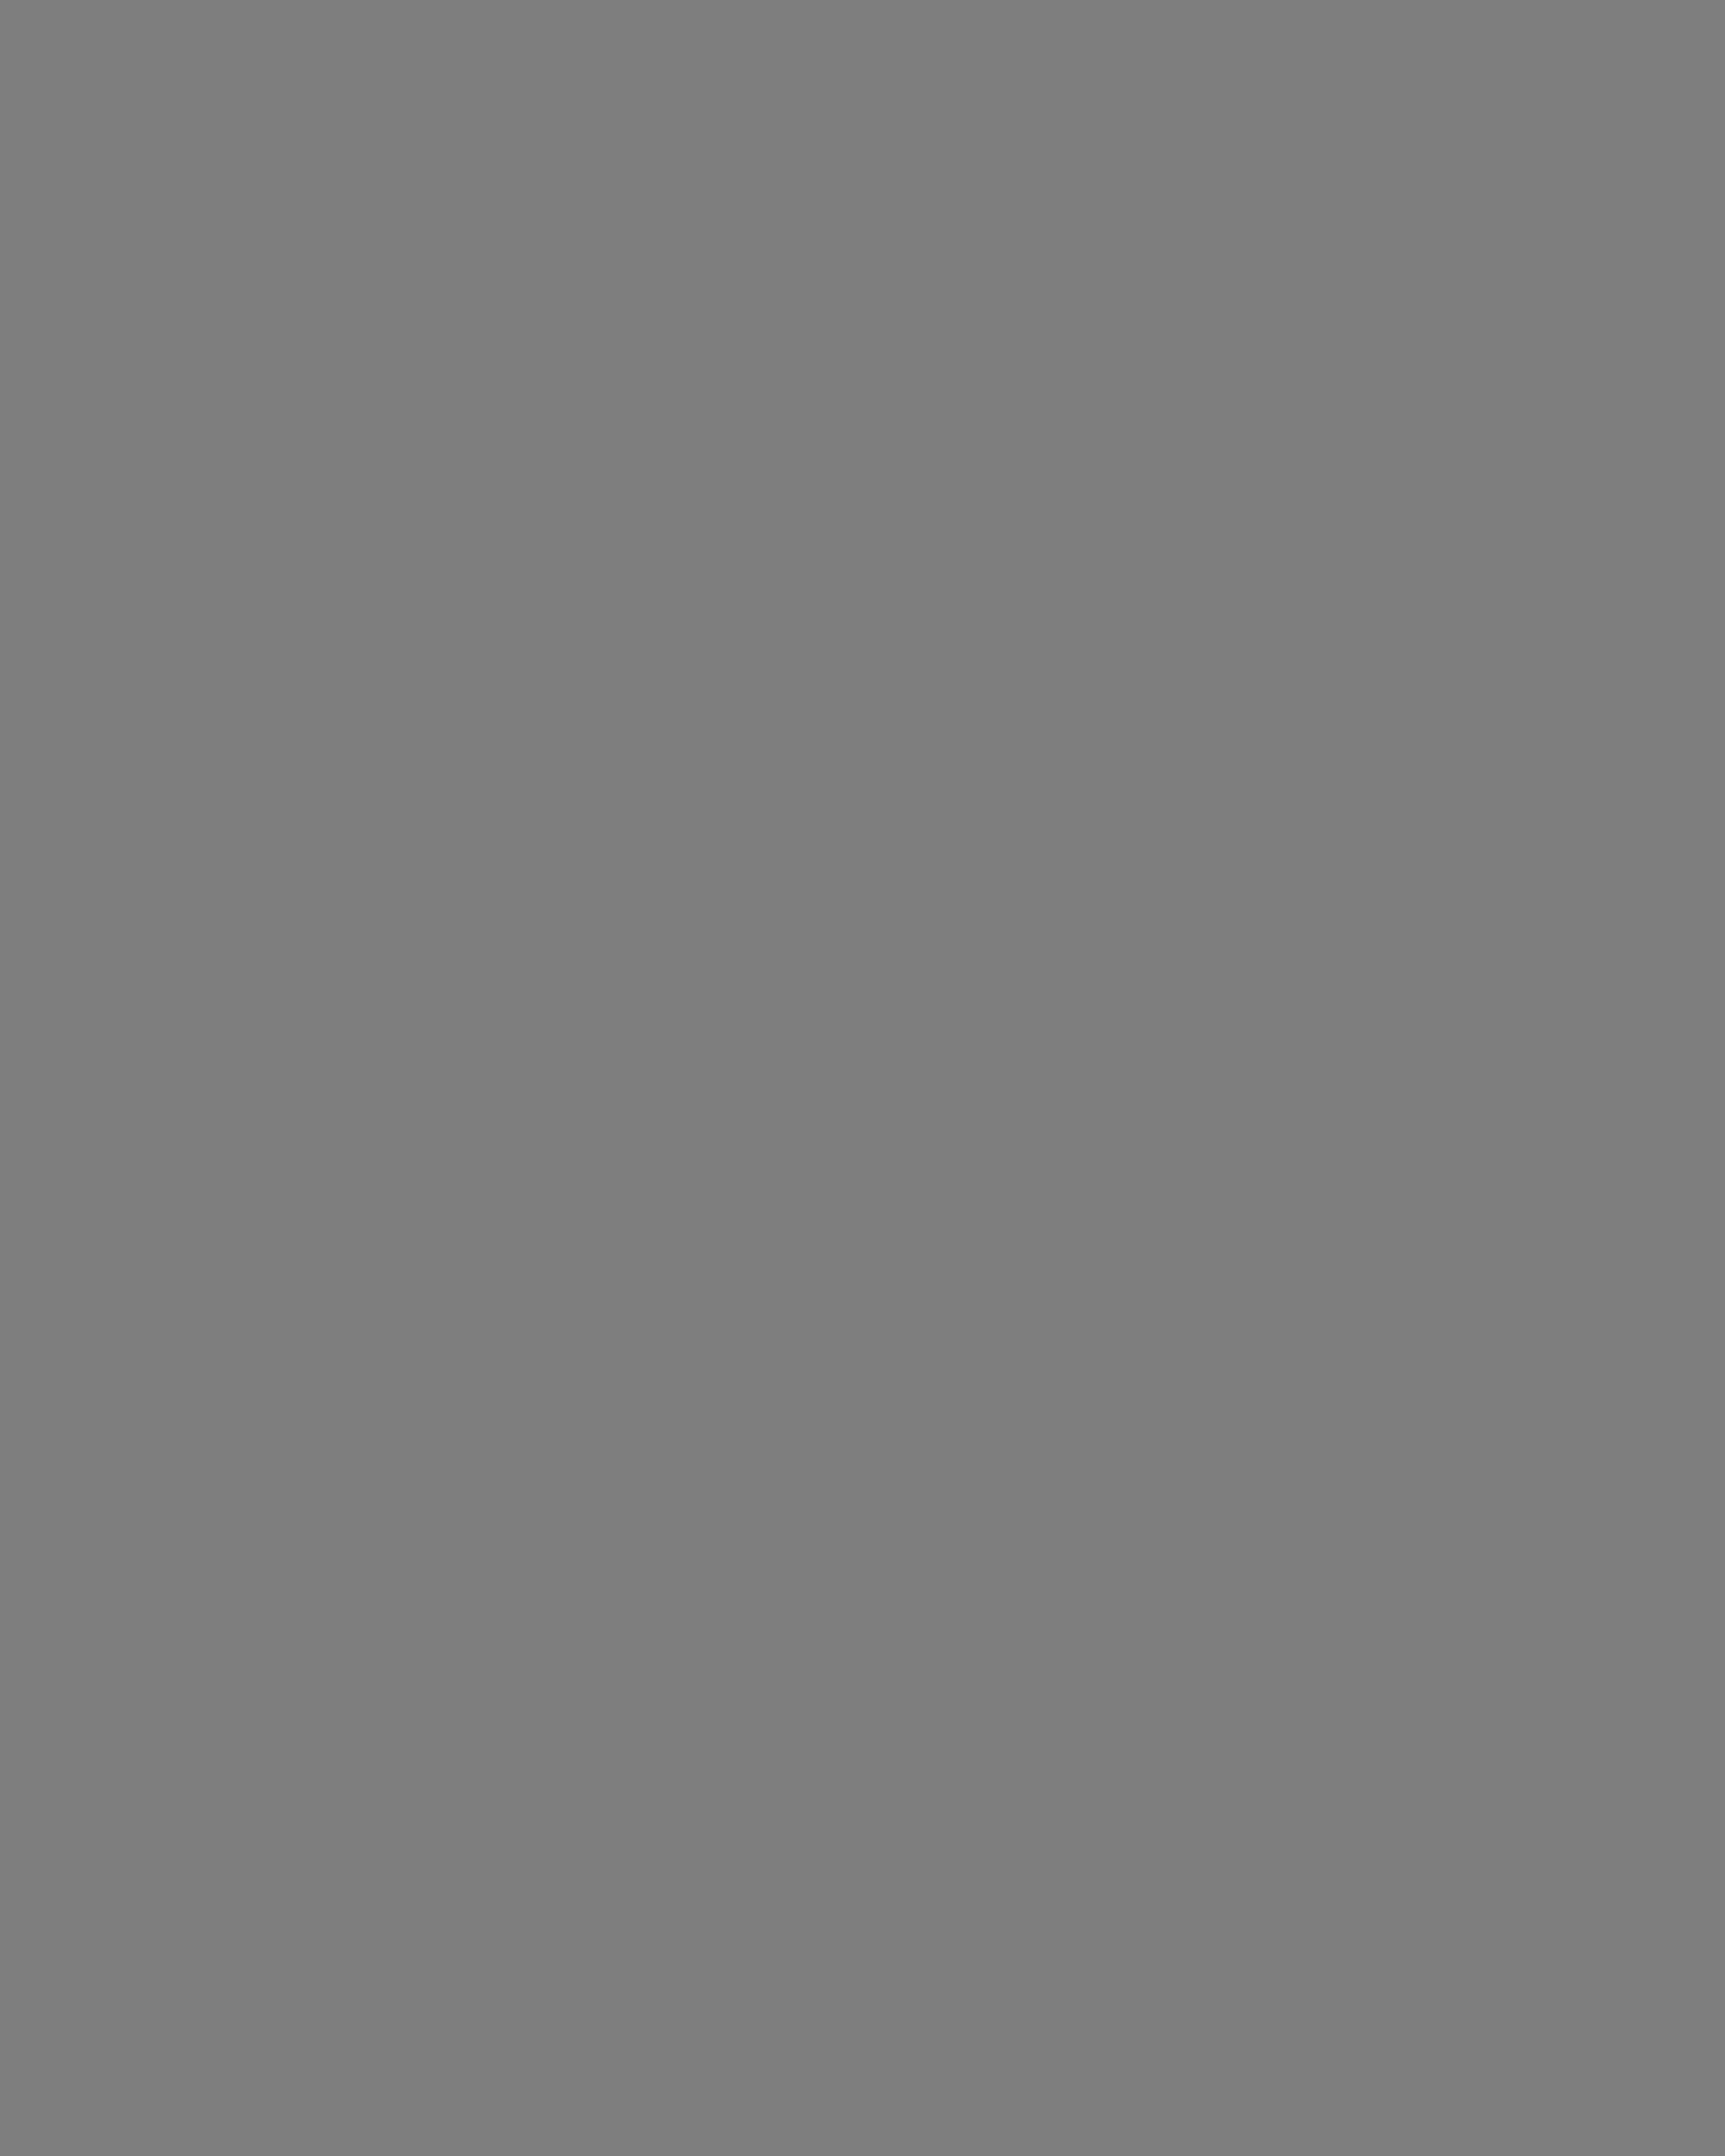 Пианист Даниил Трифонов после выступления на открытии XI Московского Пасхального фестиваля в Большом зале консерватории. Москва, 2012 год. Фотография: пресс-служба Московского Пасхального фестиваля / ИТАР-ТАСС